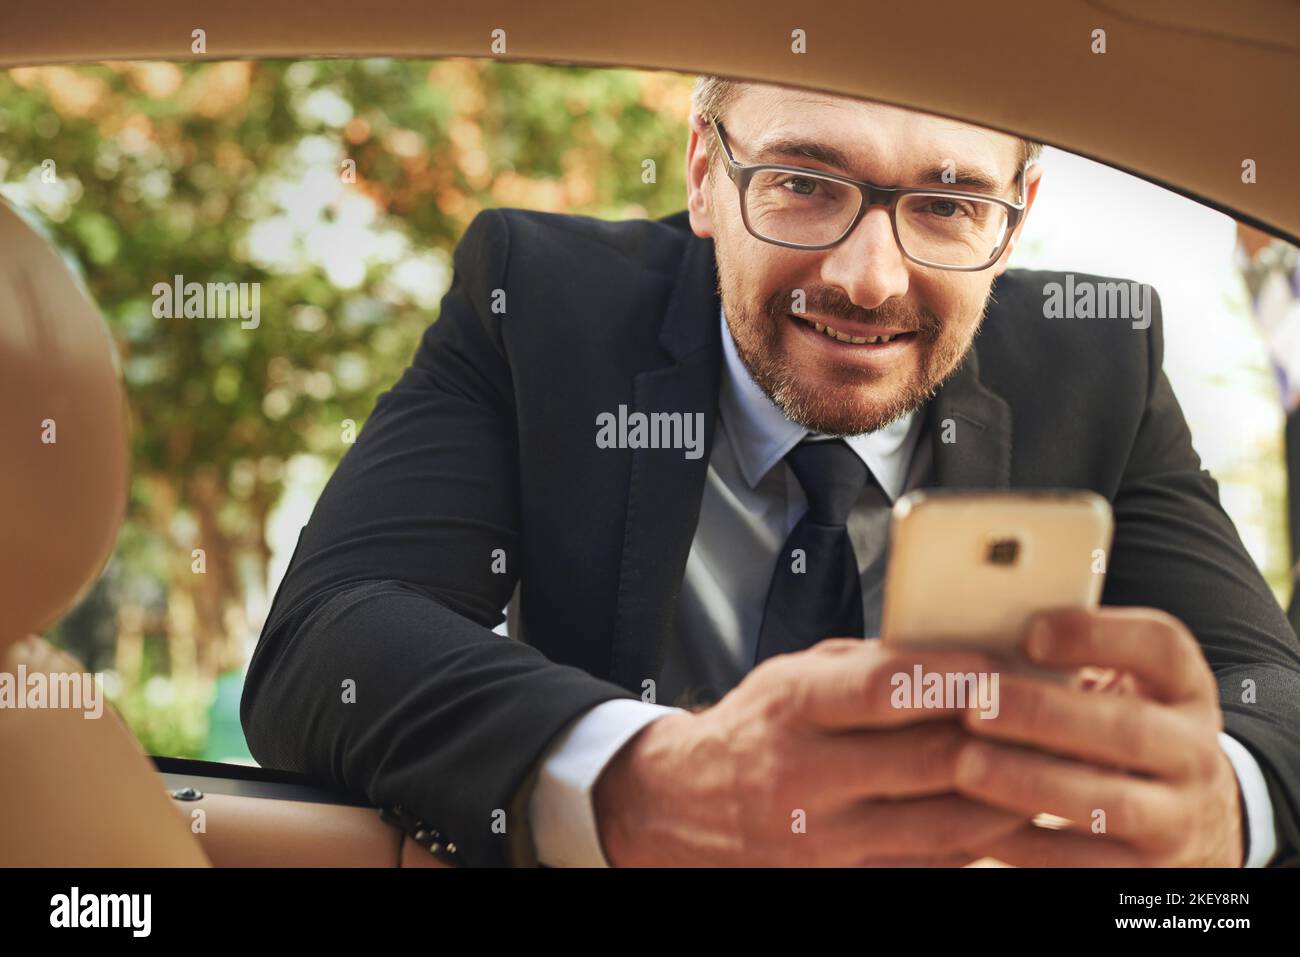 Controllo del mio programma. Ritratto di un bell'uomo d'affari che invia un testo mentre si appoggia al finestrino della sua auto. Foto Stock